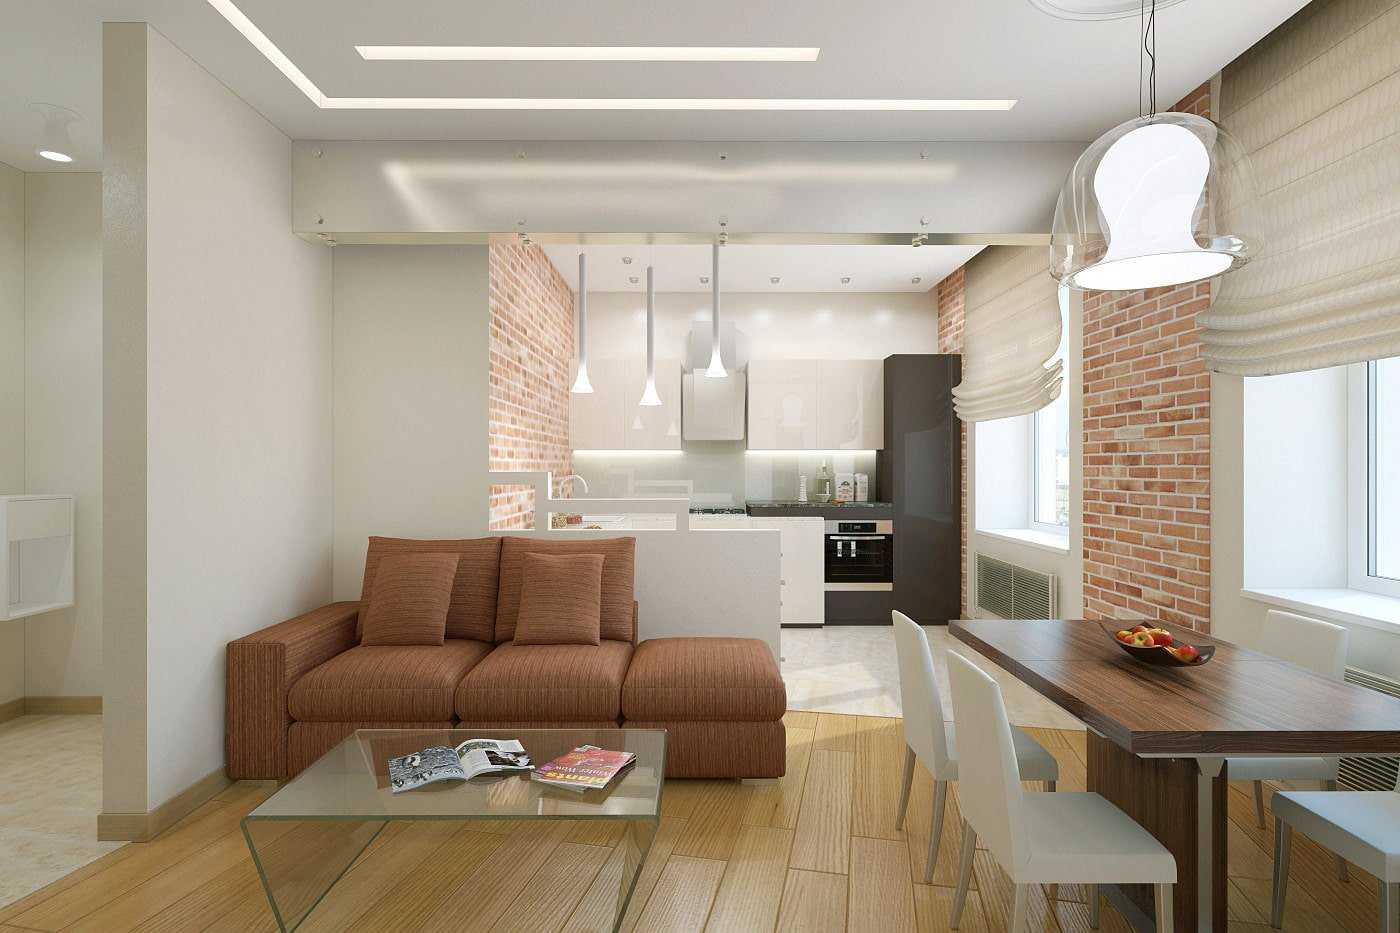 Дизайн квартир: лучшие идеи интерьера